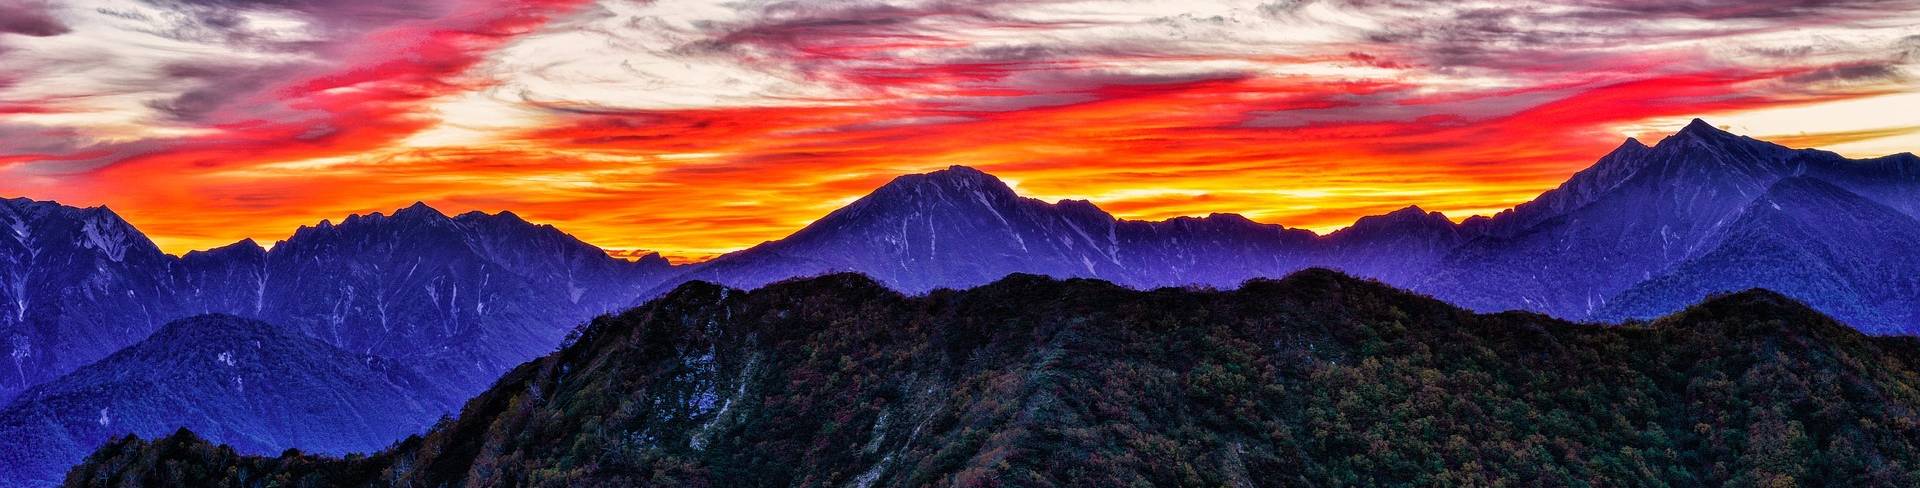 Неповторимый закат в горах Японии